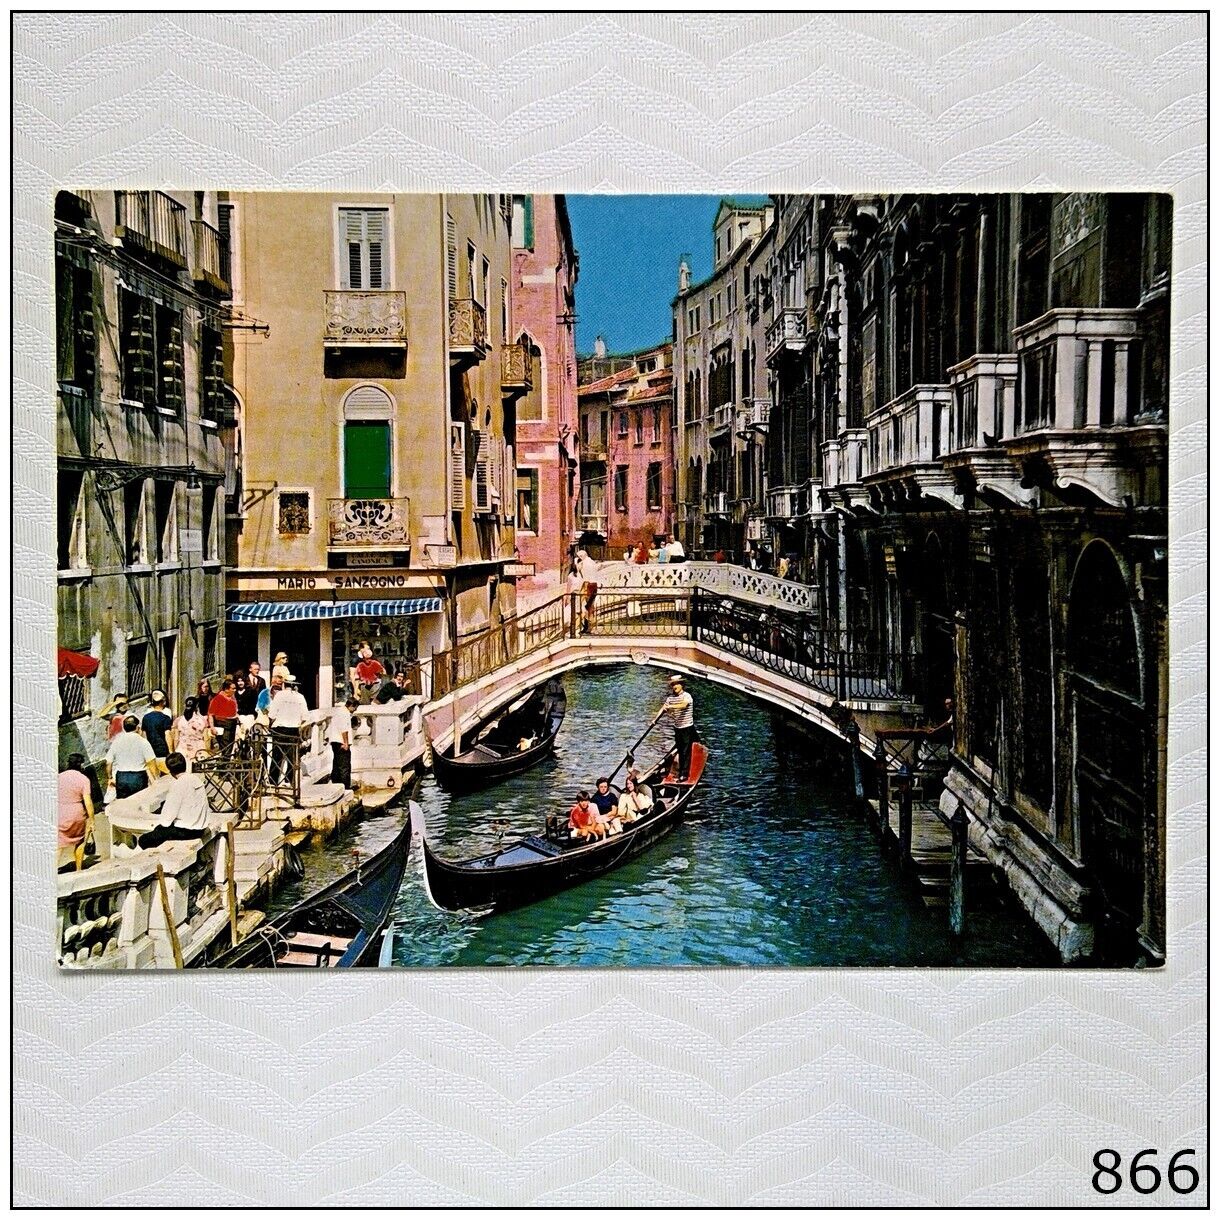 Venezia Rio di Palazzo Mario Sanzogno Postcard (P866)